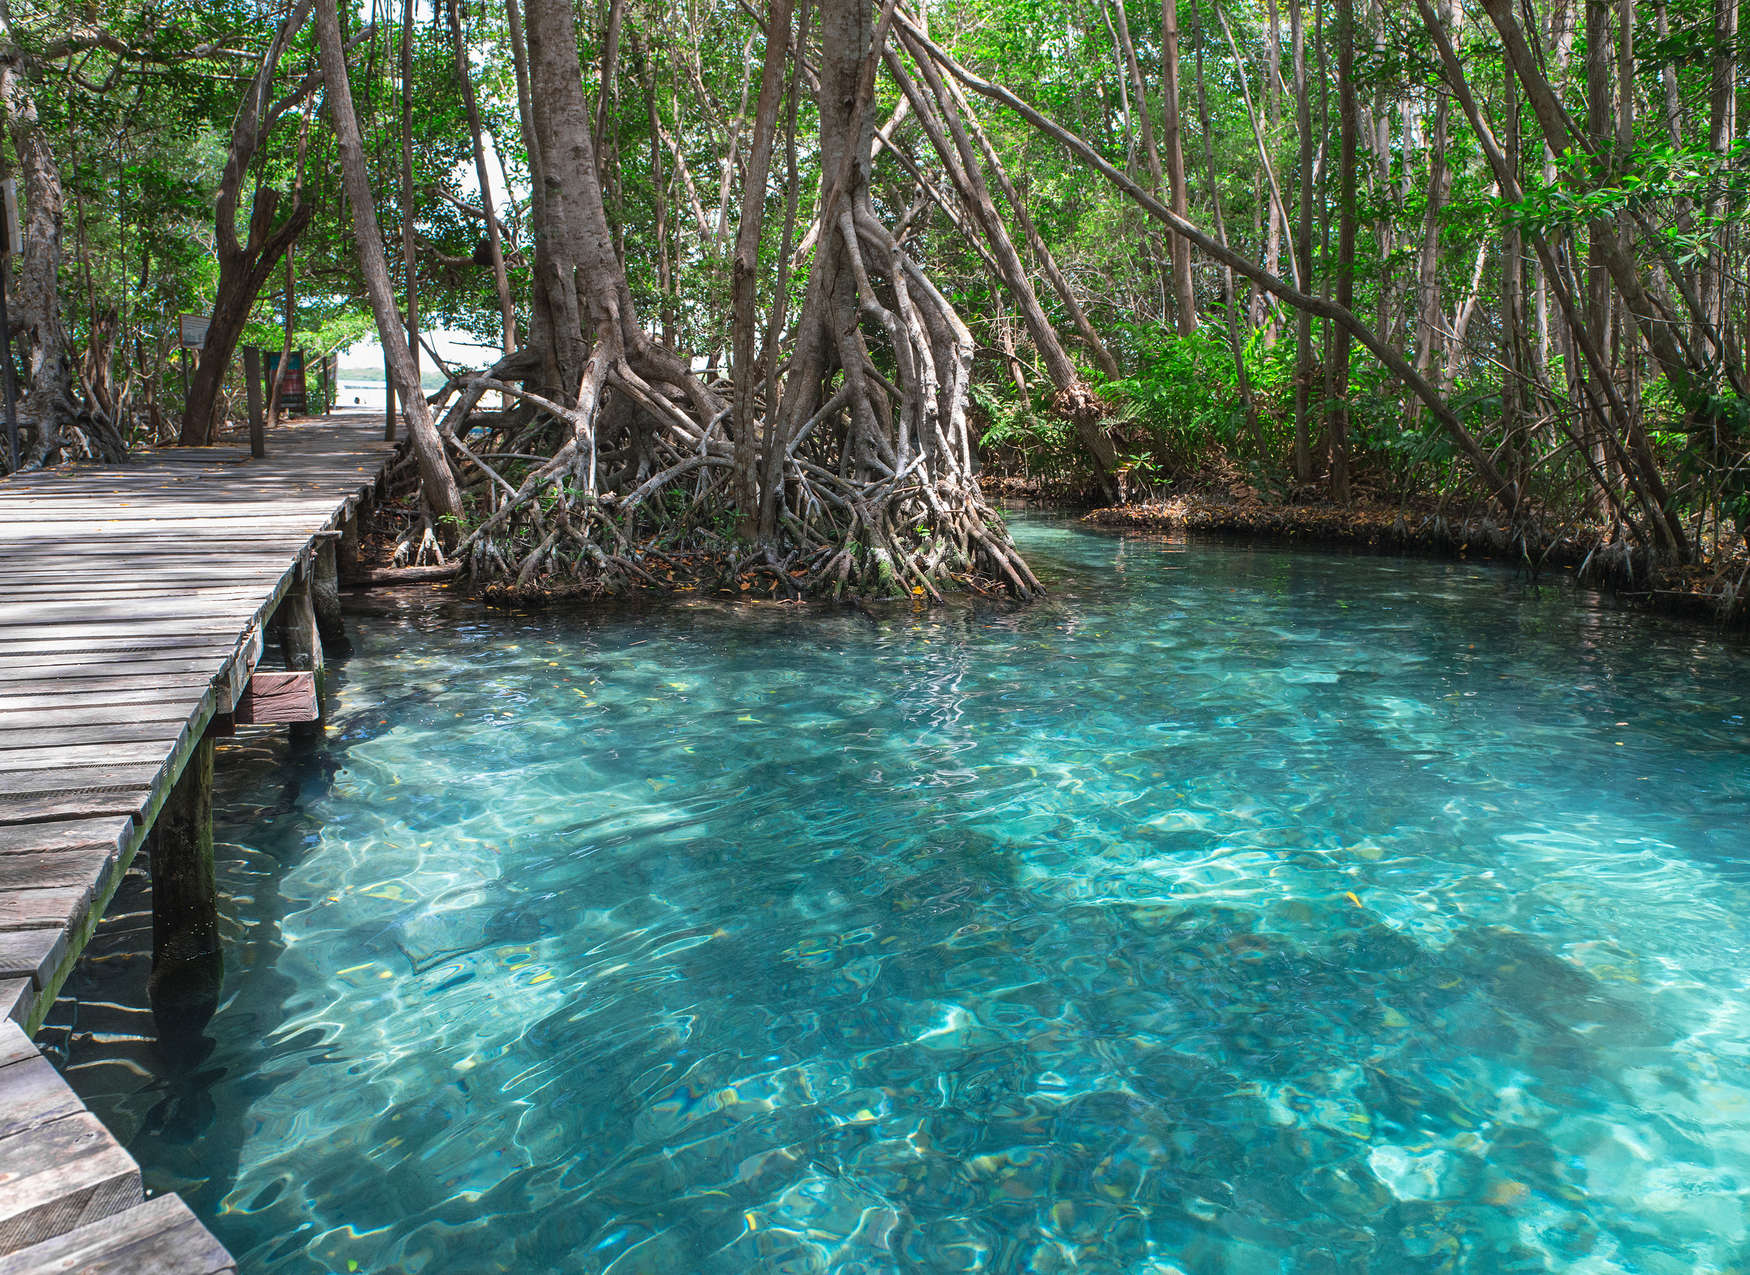             Chemin en bois au-dessus d'un lac dans la jungle - Bleu, brun, vert
        